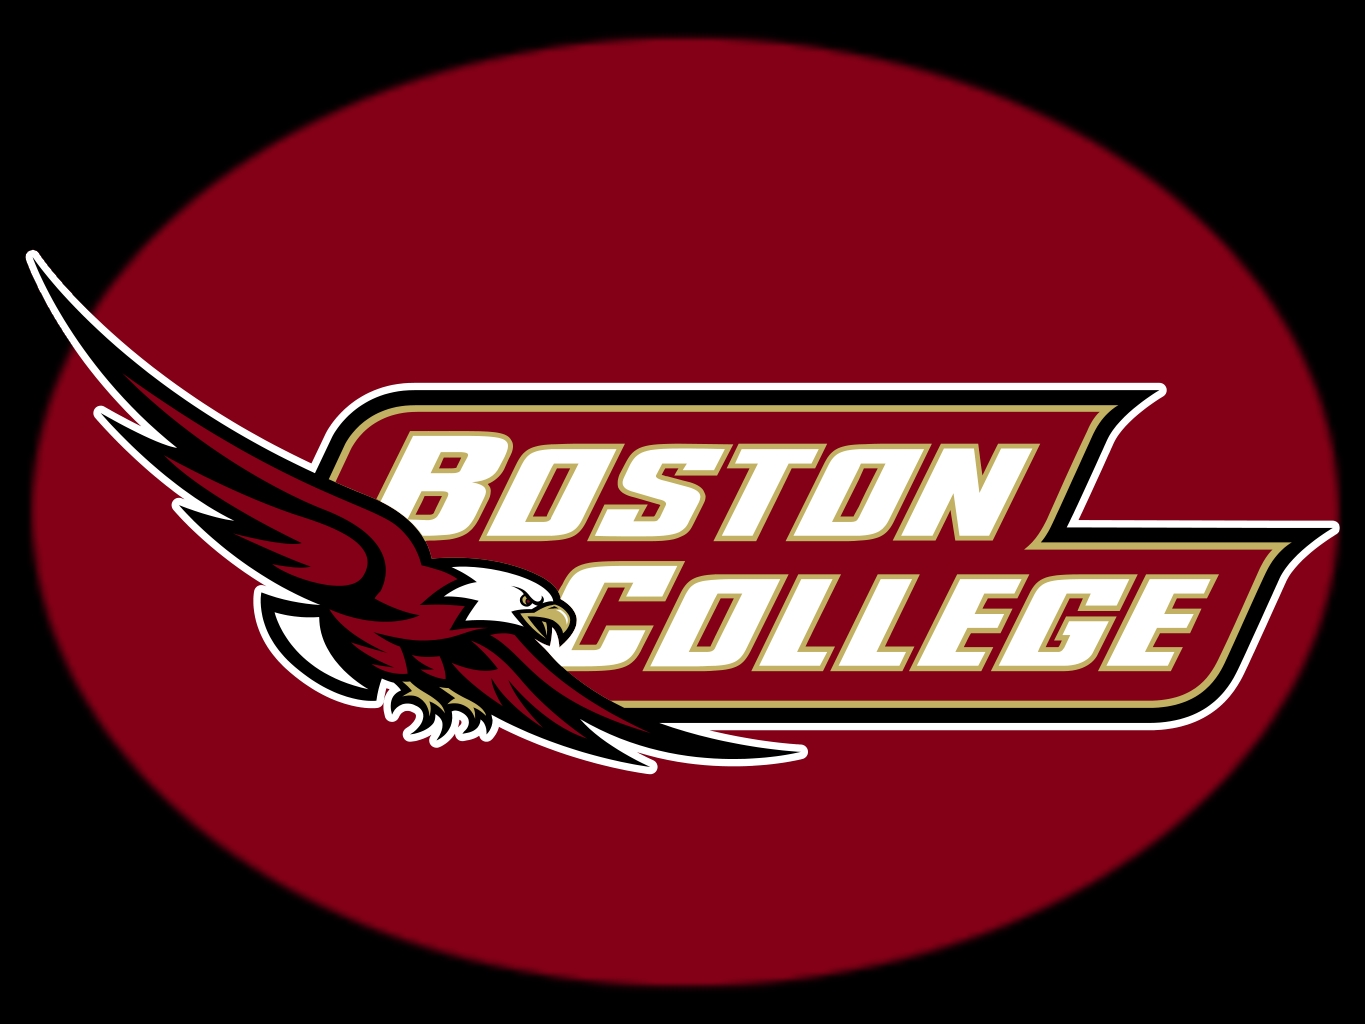 Boston college admissions essays